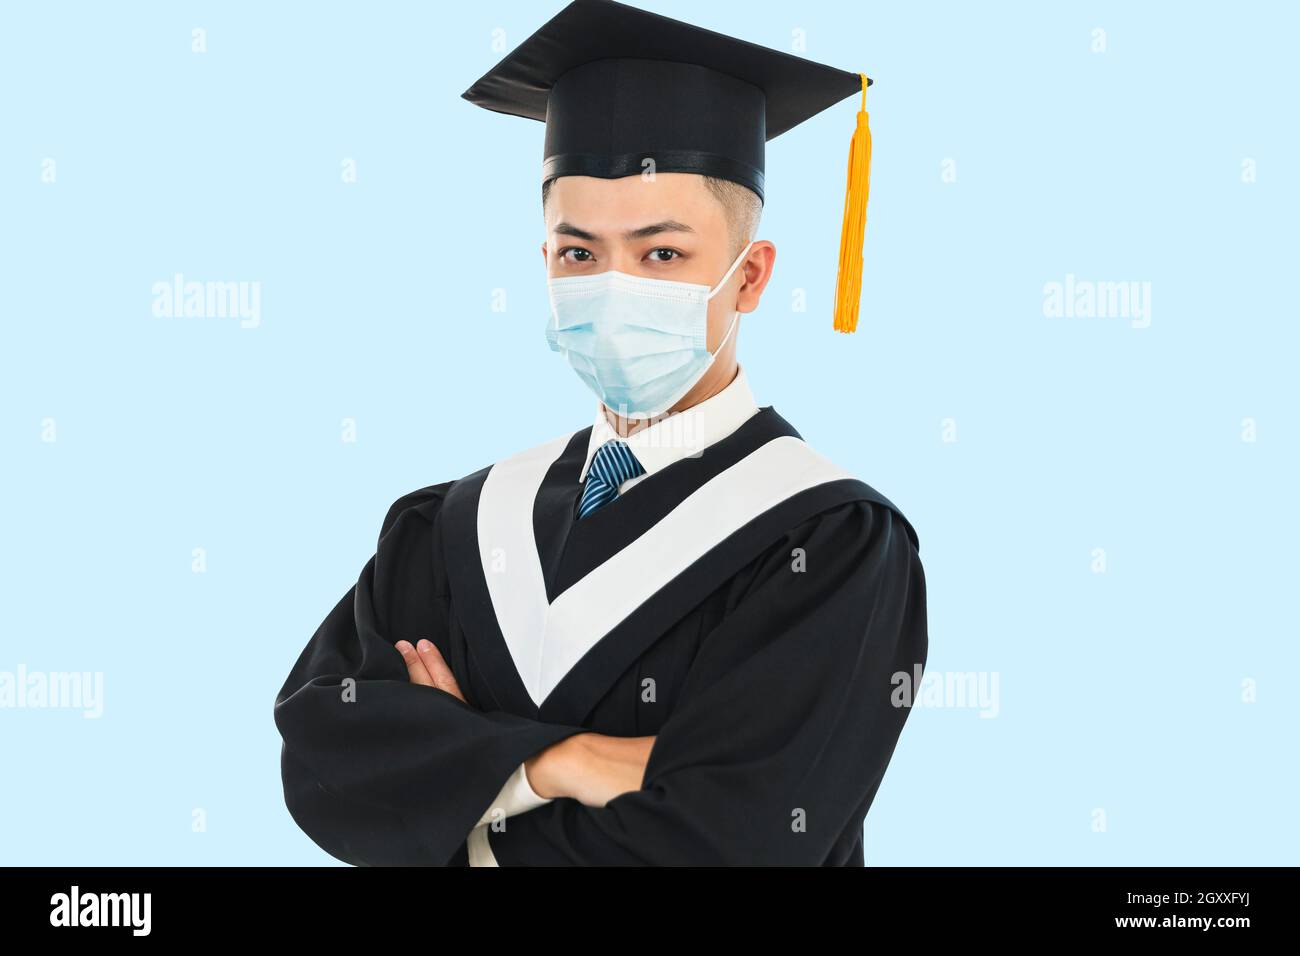 jeunes hommes diplômés portant un masque facial pendant la pandémie du coronavirus Banque D'Images